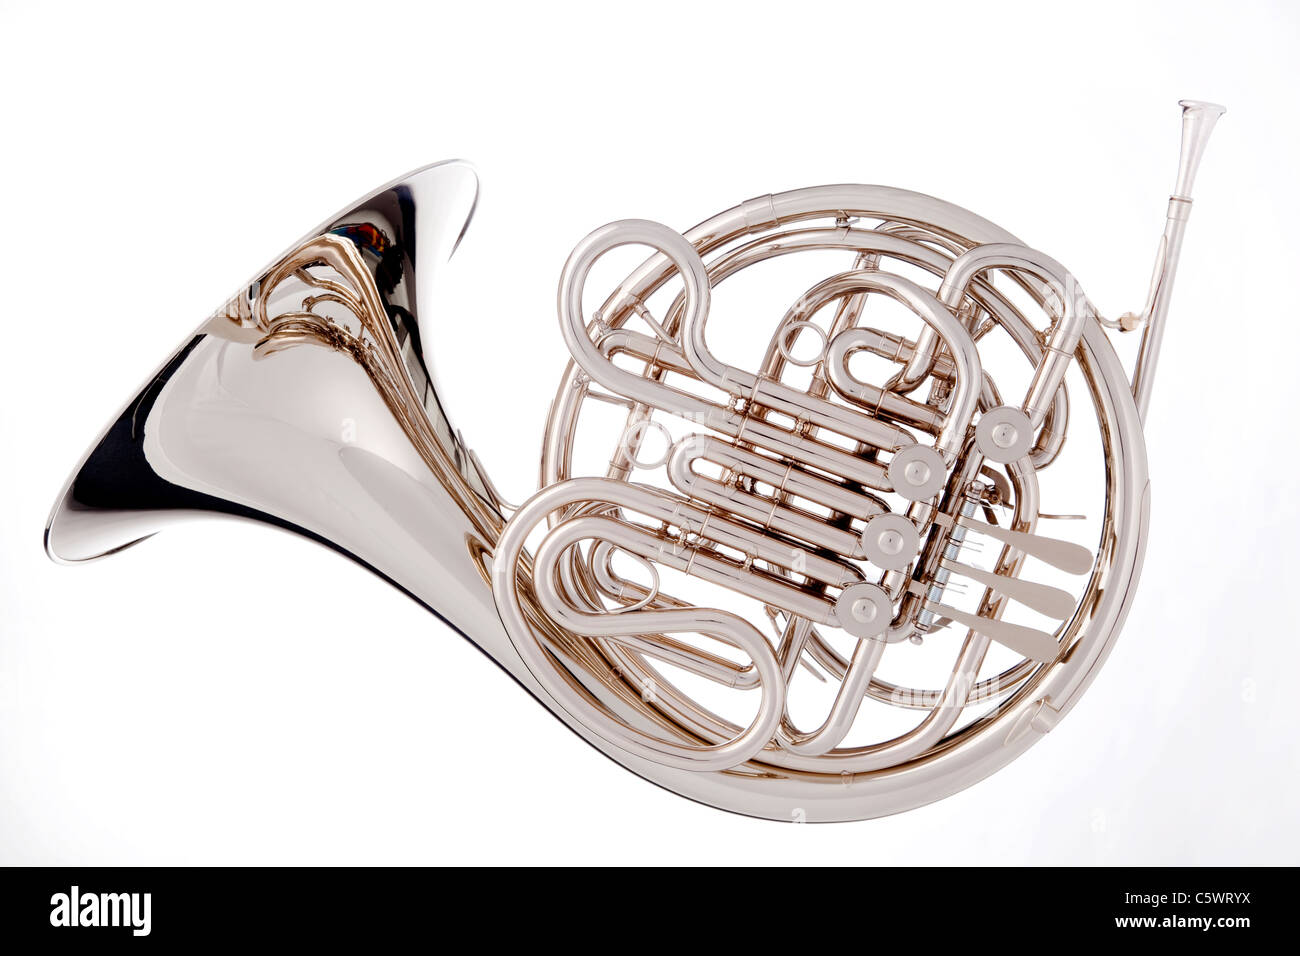 Ein Silber Horn isoliert auf einem weißen Hintergrund im horizontalen Format. Stockfoto